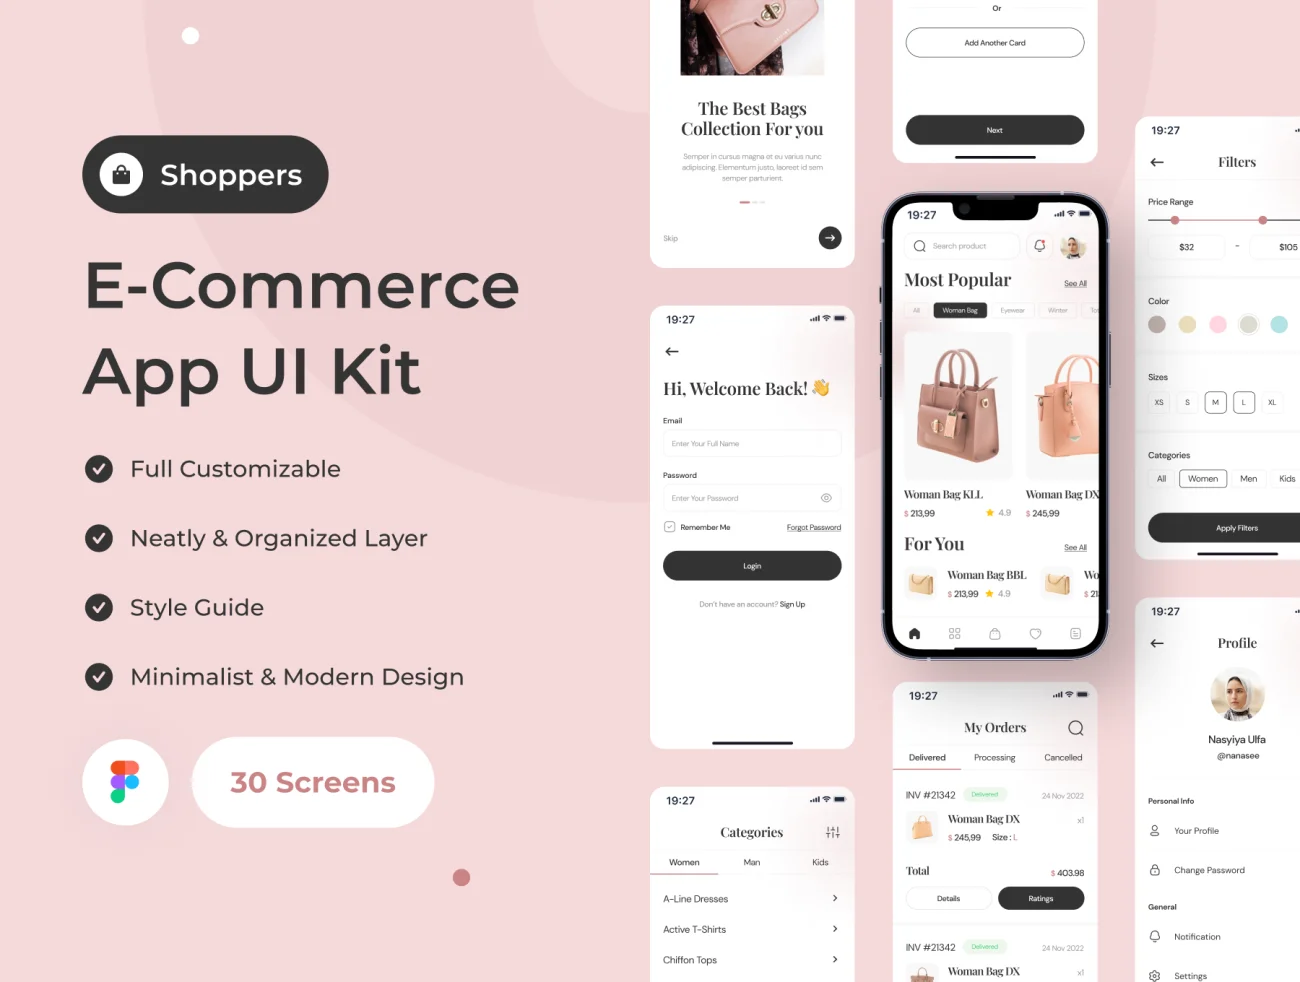 30屏潮流服饰轻奢箱包电商网购平台应用UI设计套件 Shoppers – E-Commerce App UI Kit .figma插图1